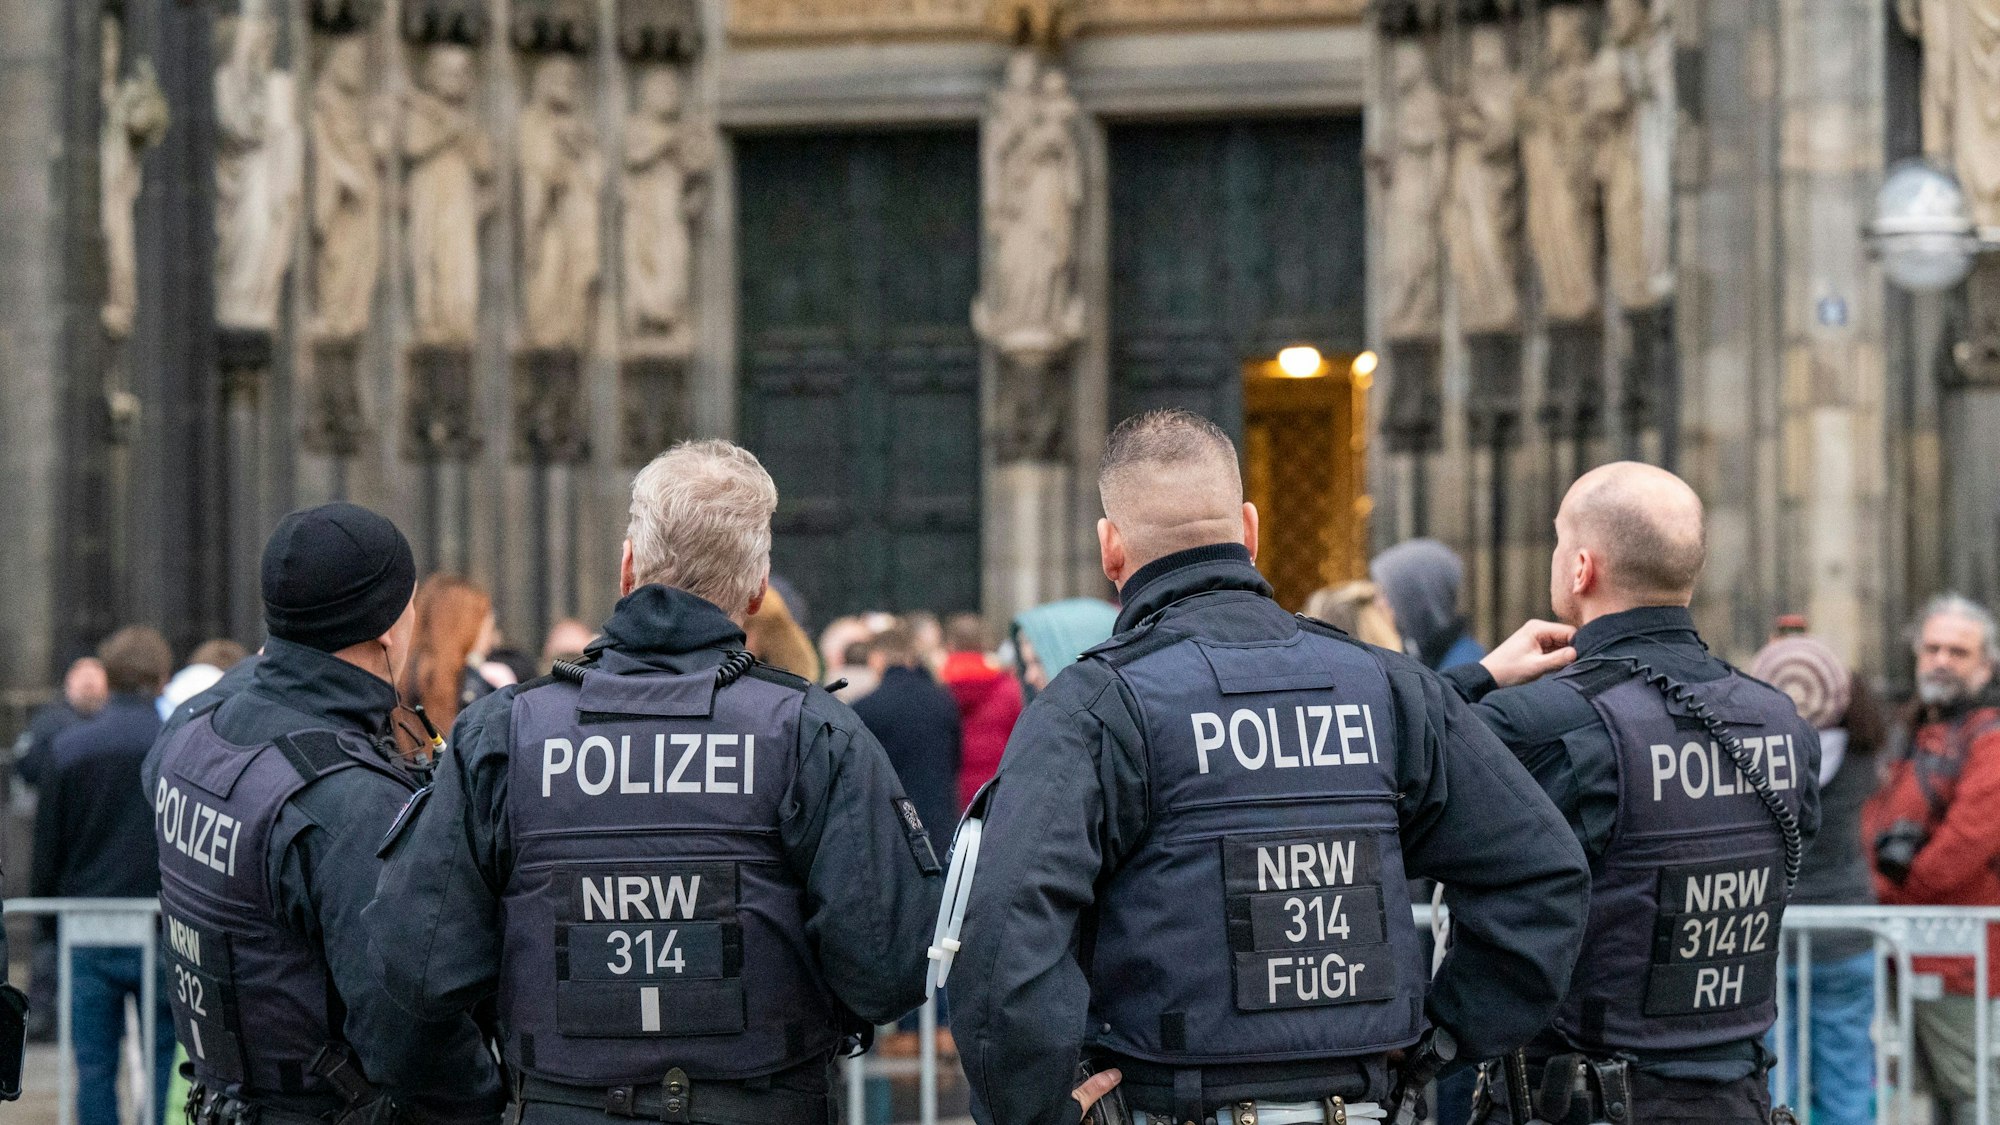 Köln: Wegen eines befürchteten Anschlags kontrolliert die Polizei alle Besucher des Doms. Zu sehen sind die Hinteransichten von vier Polizisten vor dem Hauptportal des Doms.